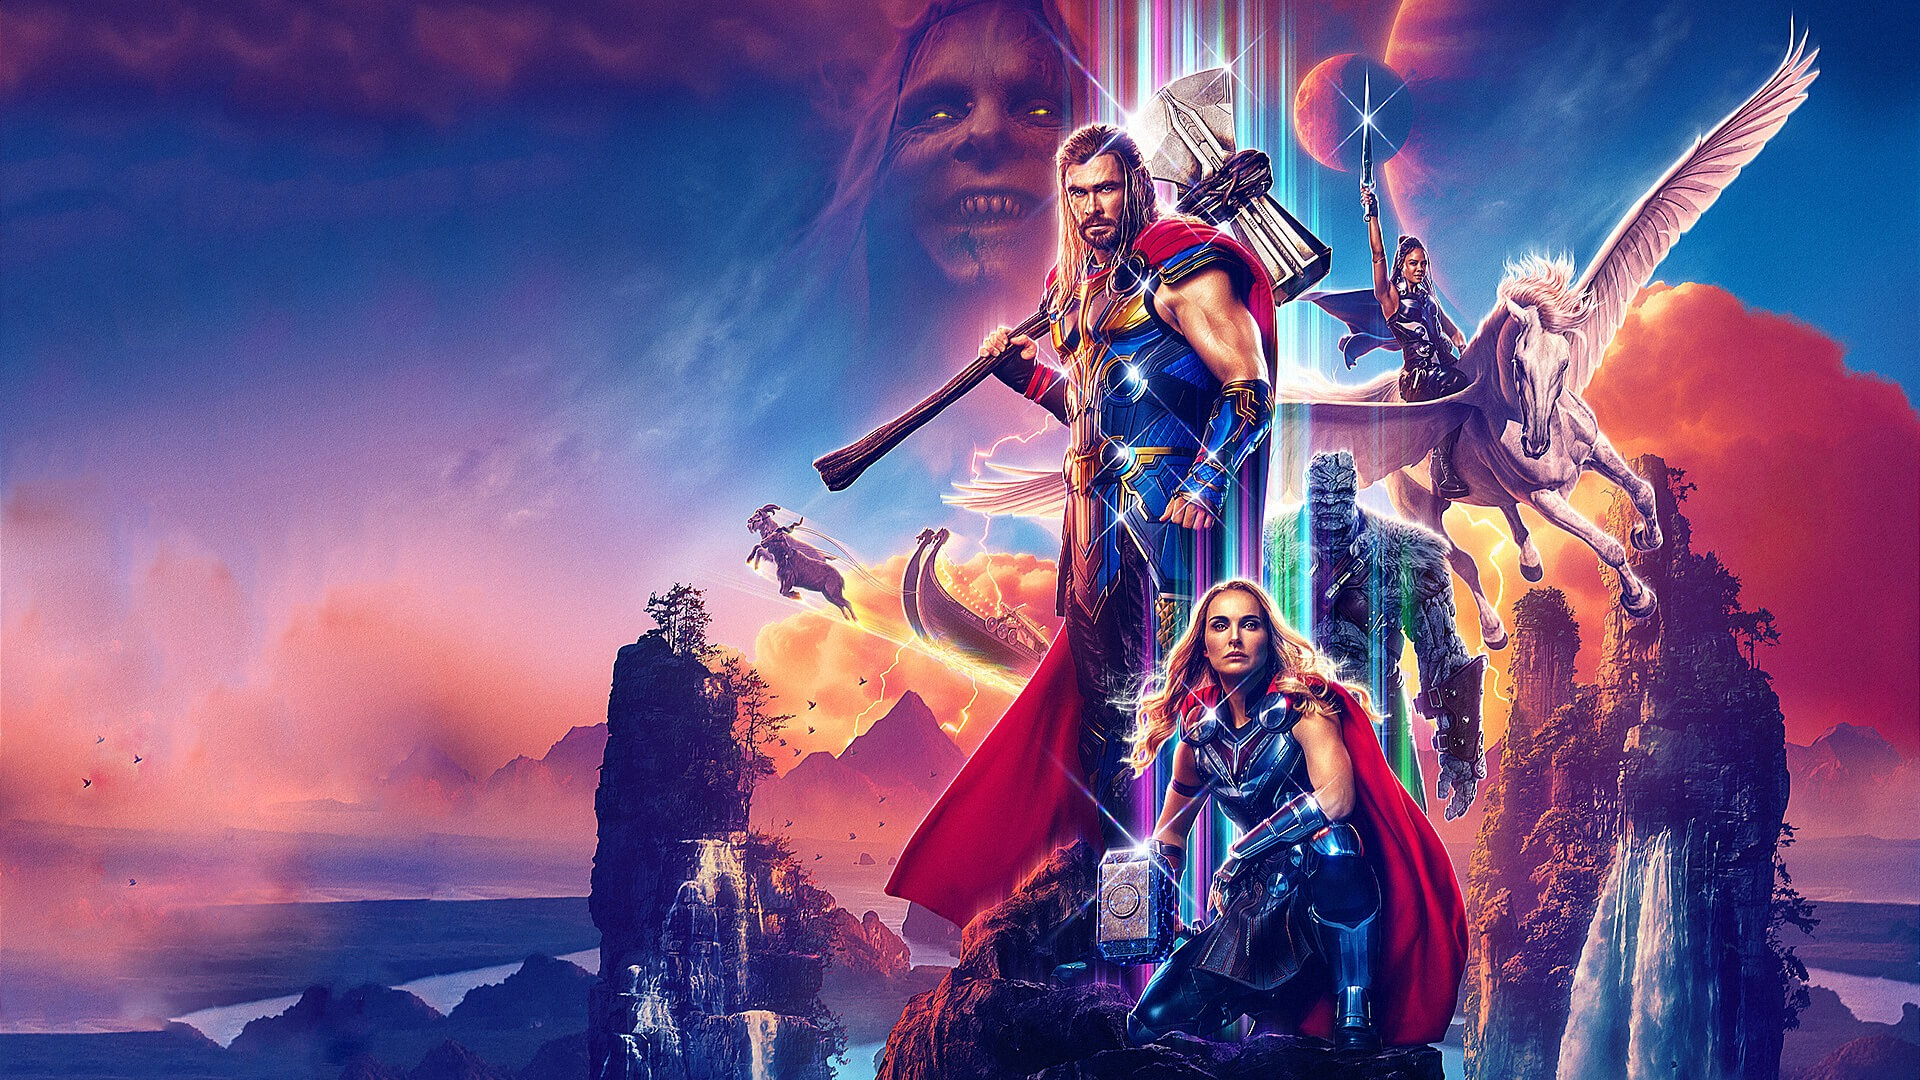 A Disney+ Day izgalmas premierekkel jelentkezik, köztük a Marvel Studios Thor: Szerelem és mennydörgés bemutatójával